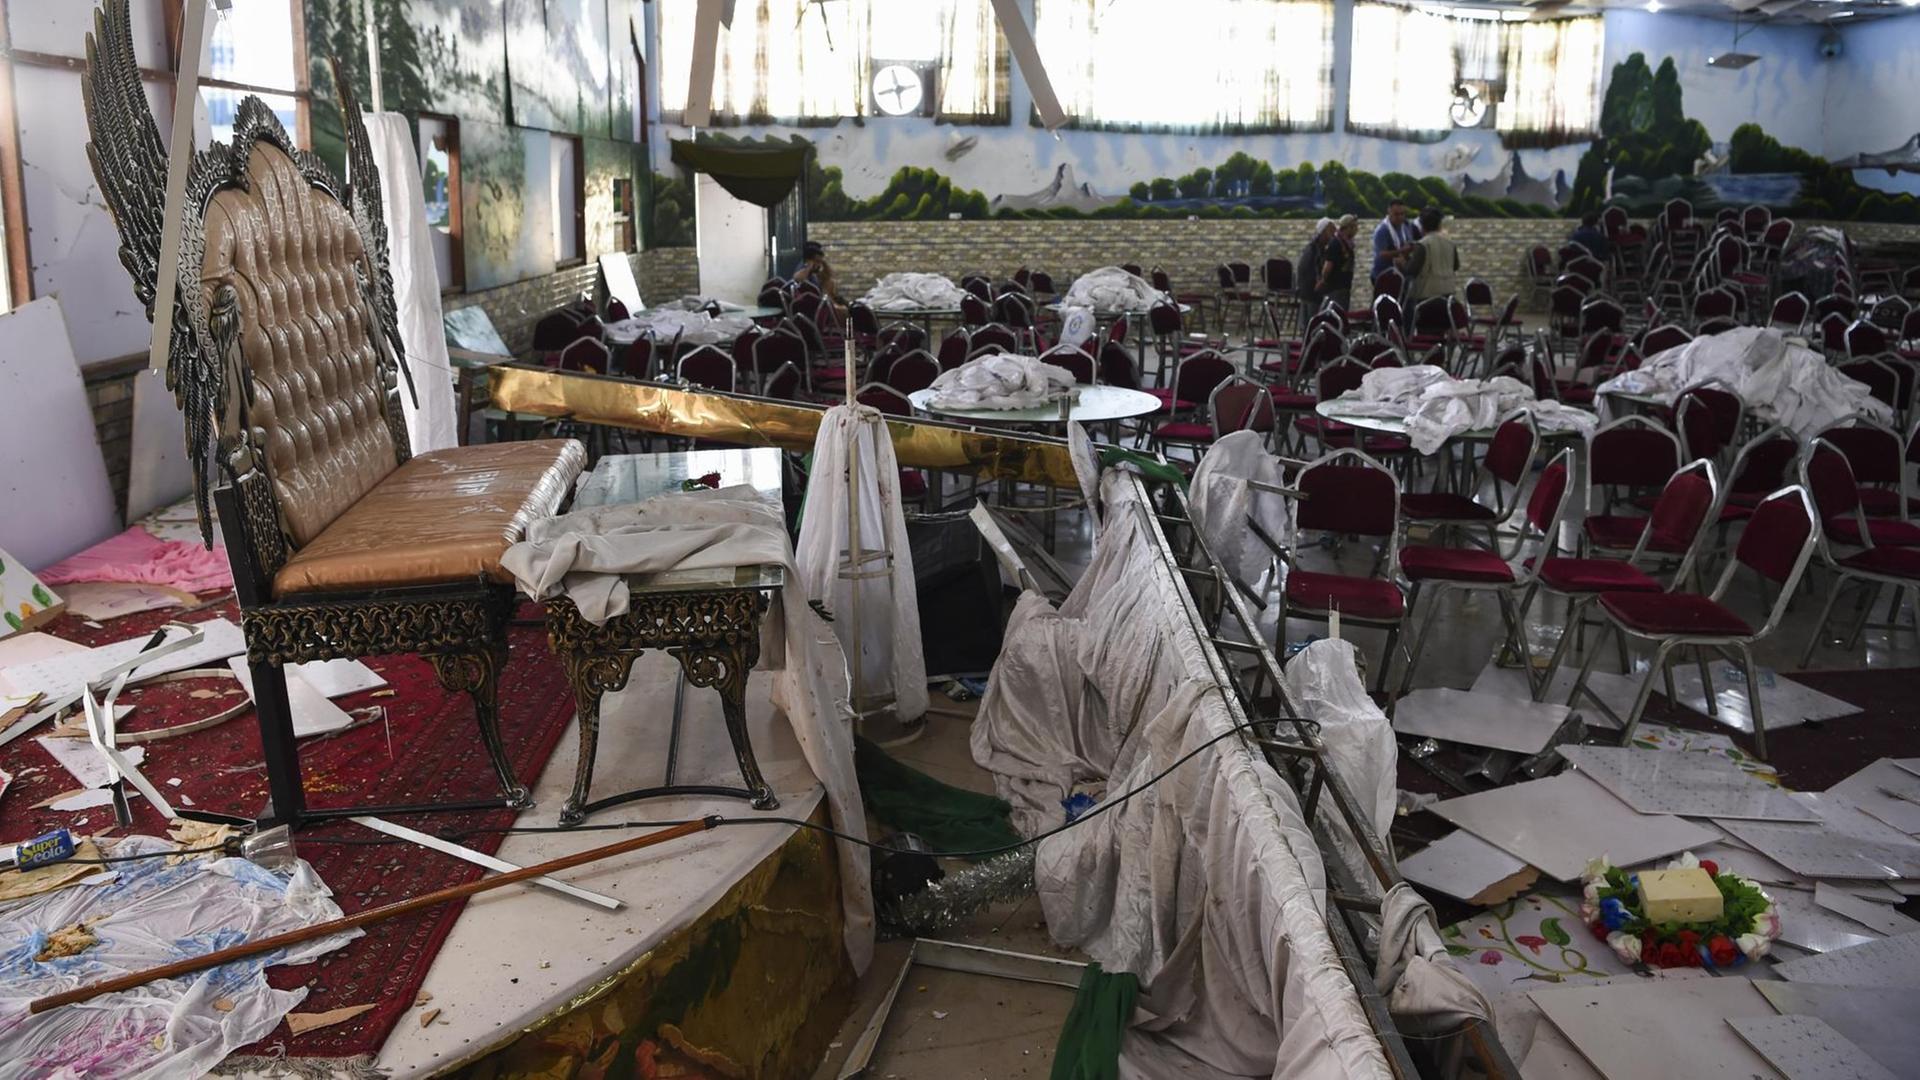 Im Vordergrund des Bildes ist ein durch eine Explosion zerstörter Hochzeitssaal in Kabul zu sehen, im Hintergrund untersuchen Männer den Raum.